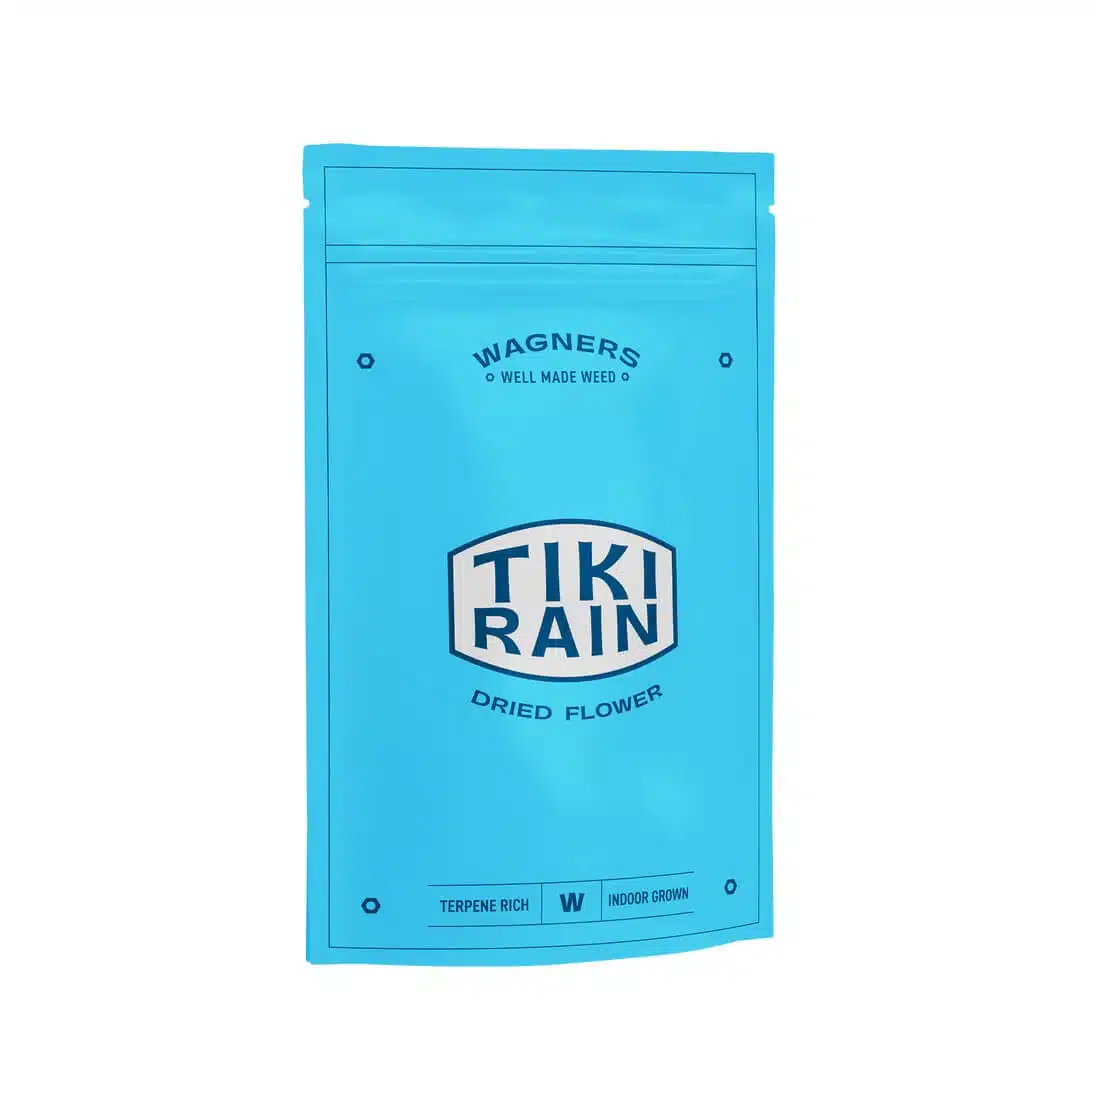 אריזת טיקי ריין (Tiki Rain) - סאטיבה T20/C4